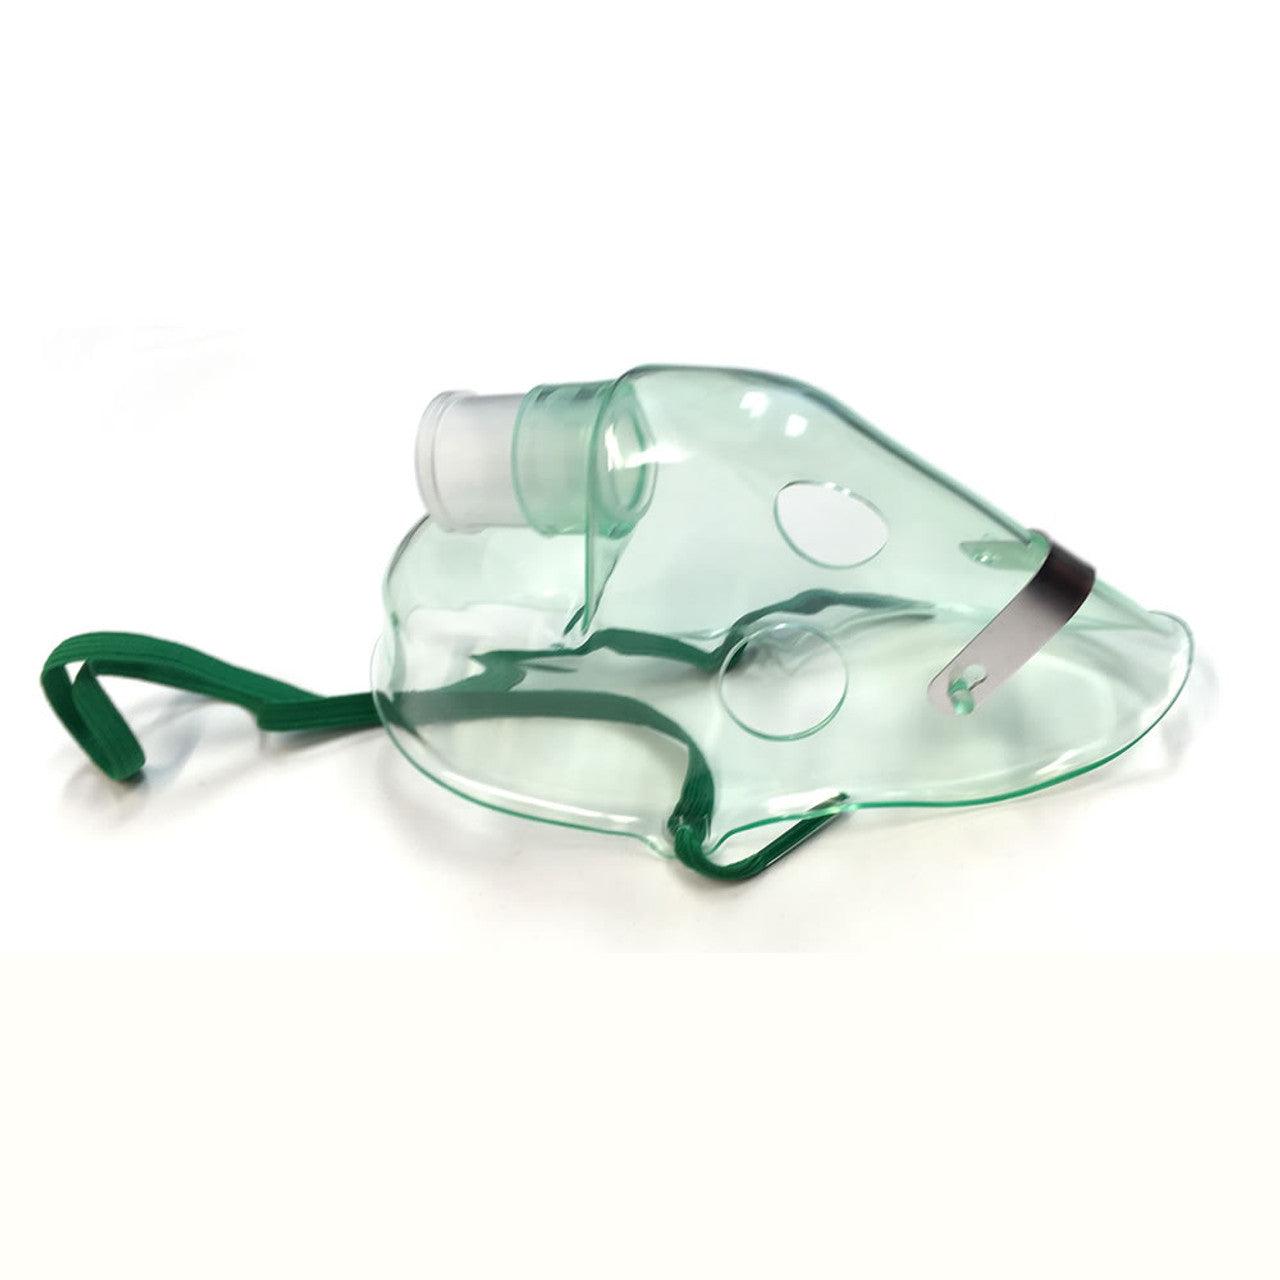 AMG 705-540 MedPro Adult Nebulizer Masks